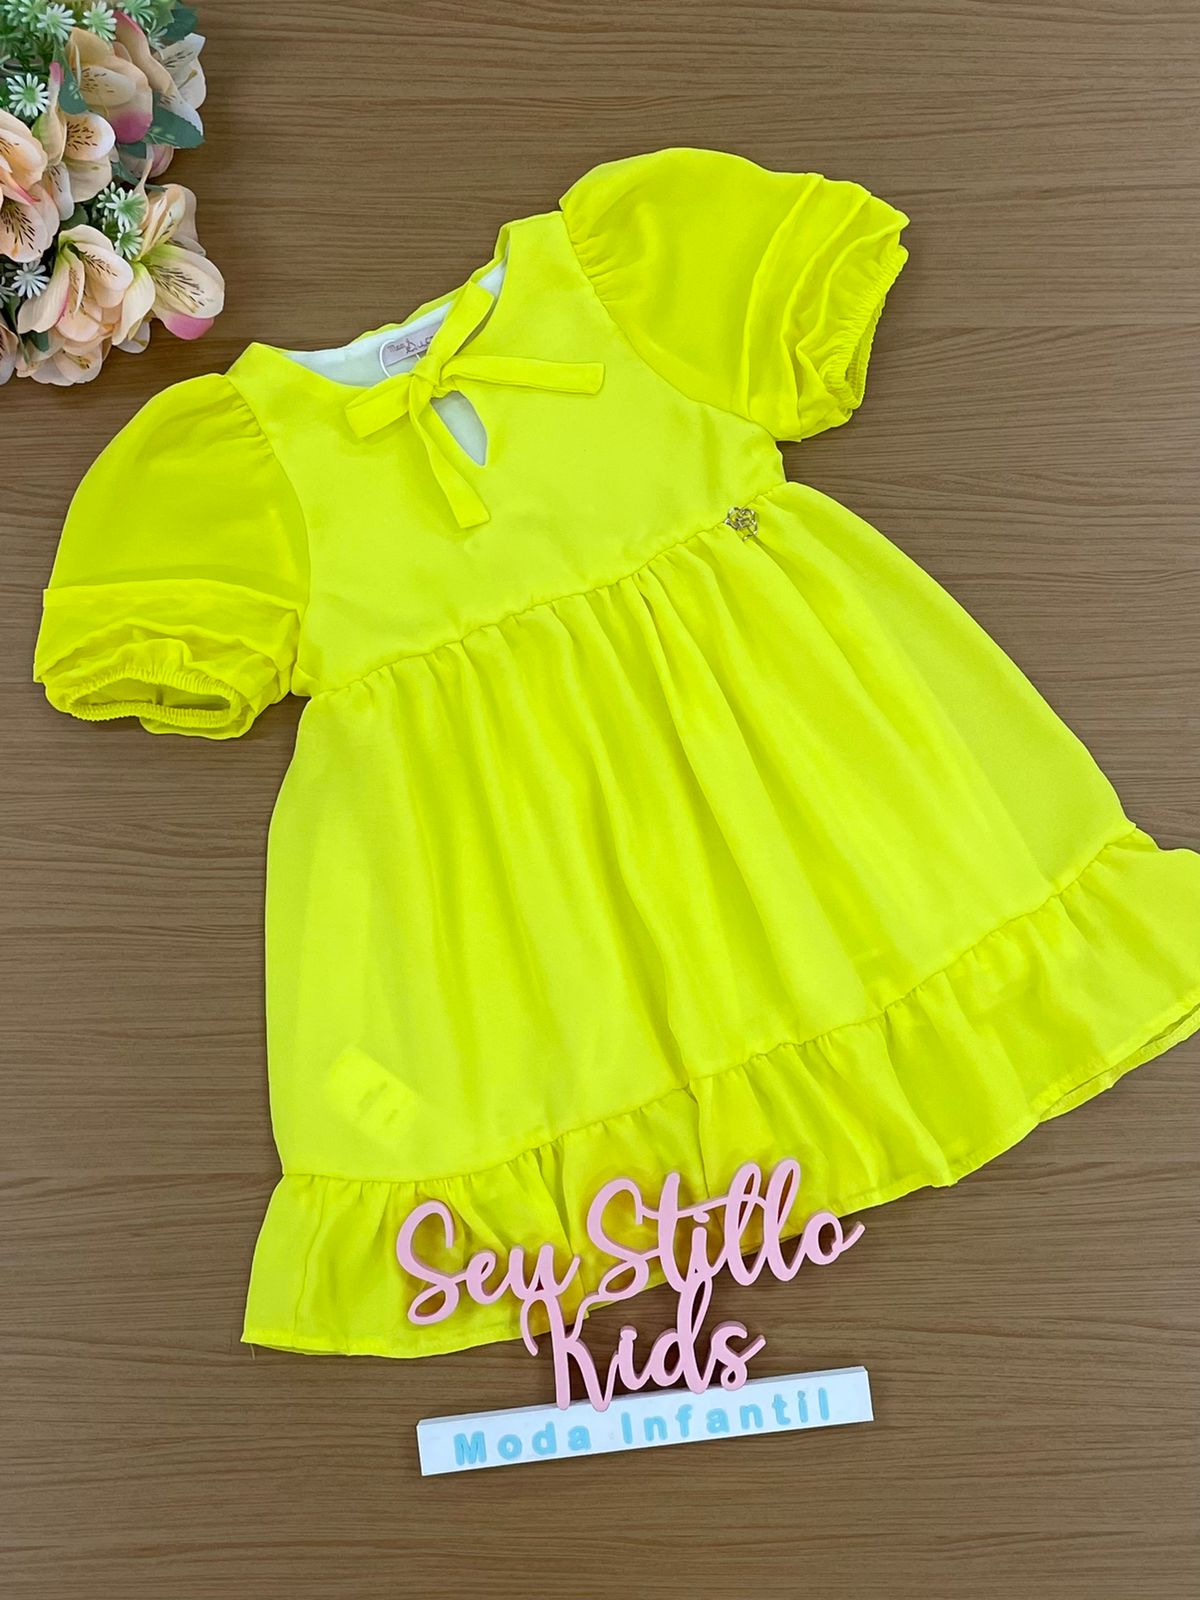 Vestido Infantil Mon Sucré Verão Amarelo